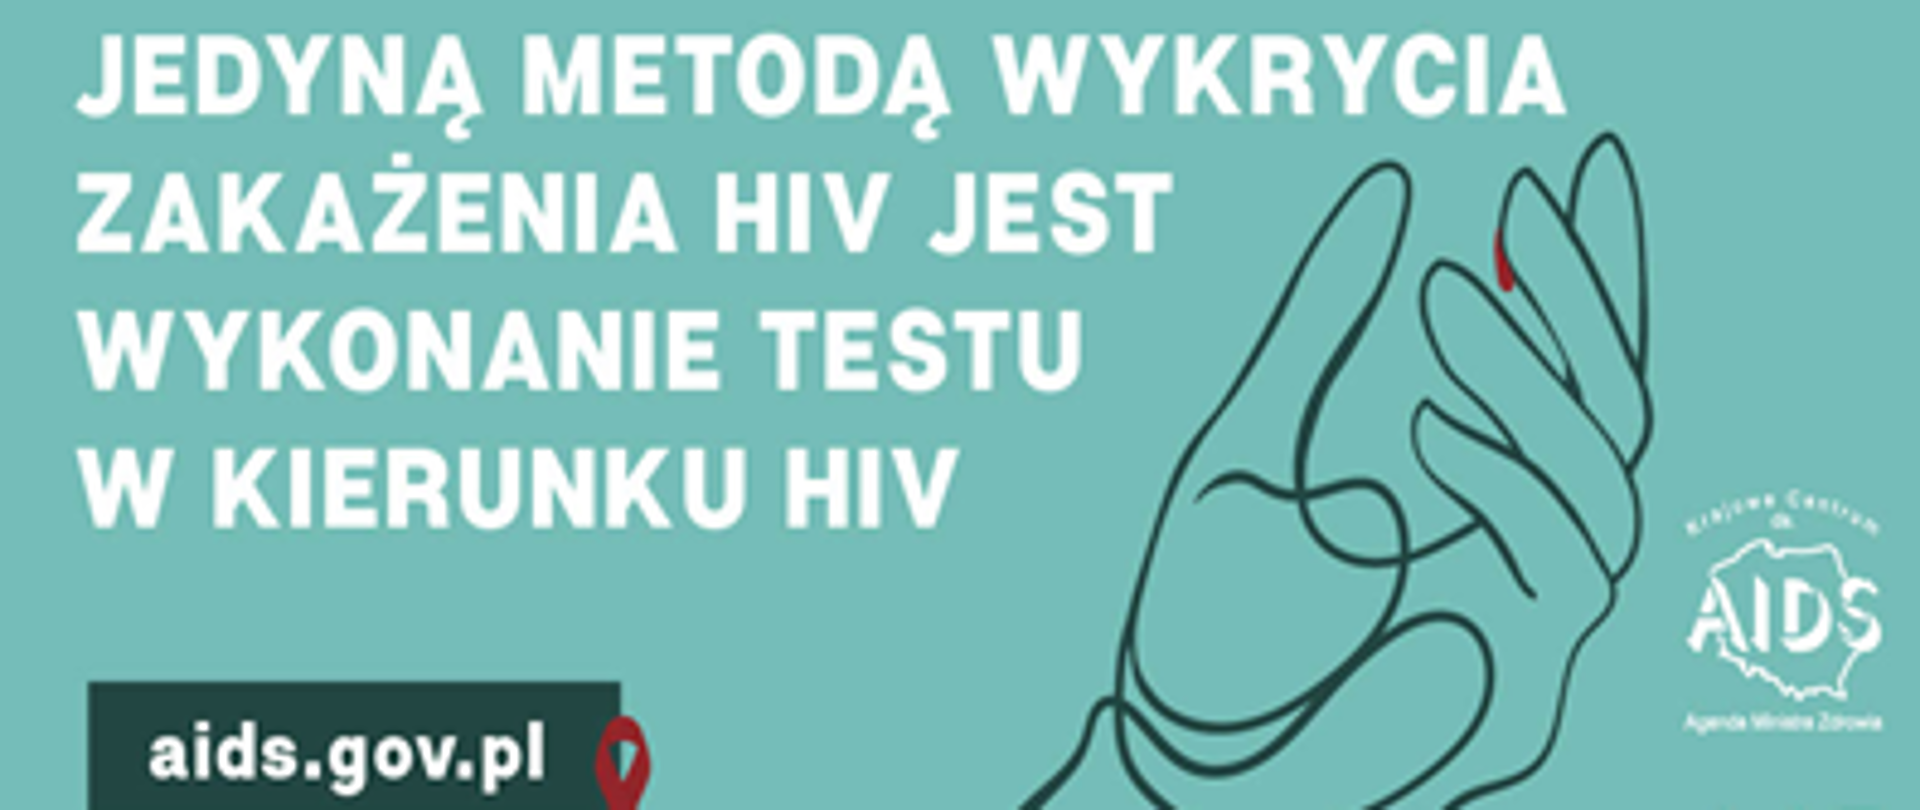 Ostrzeżenie o HIV że można go wykryć przez test